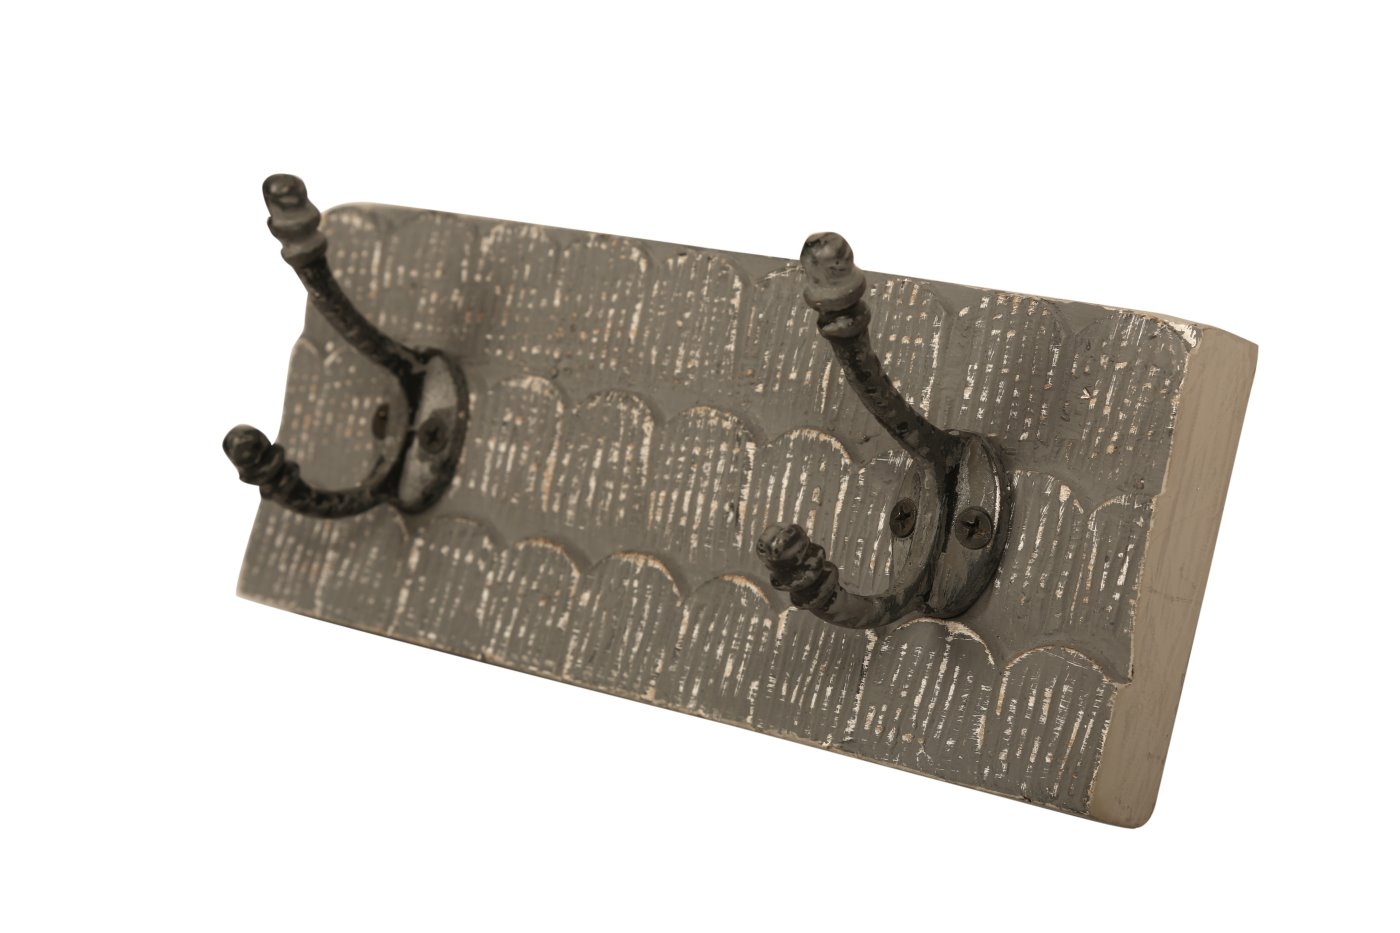 bhp Wandgarderobe aus Holz braungrau gemustert mit 2 Metallhaken-Front geschnitzt